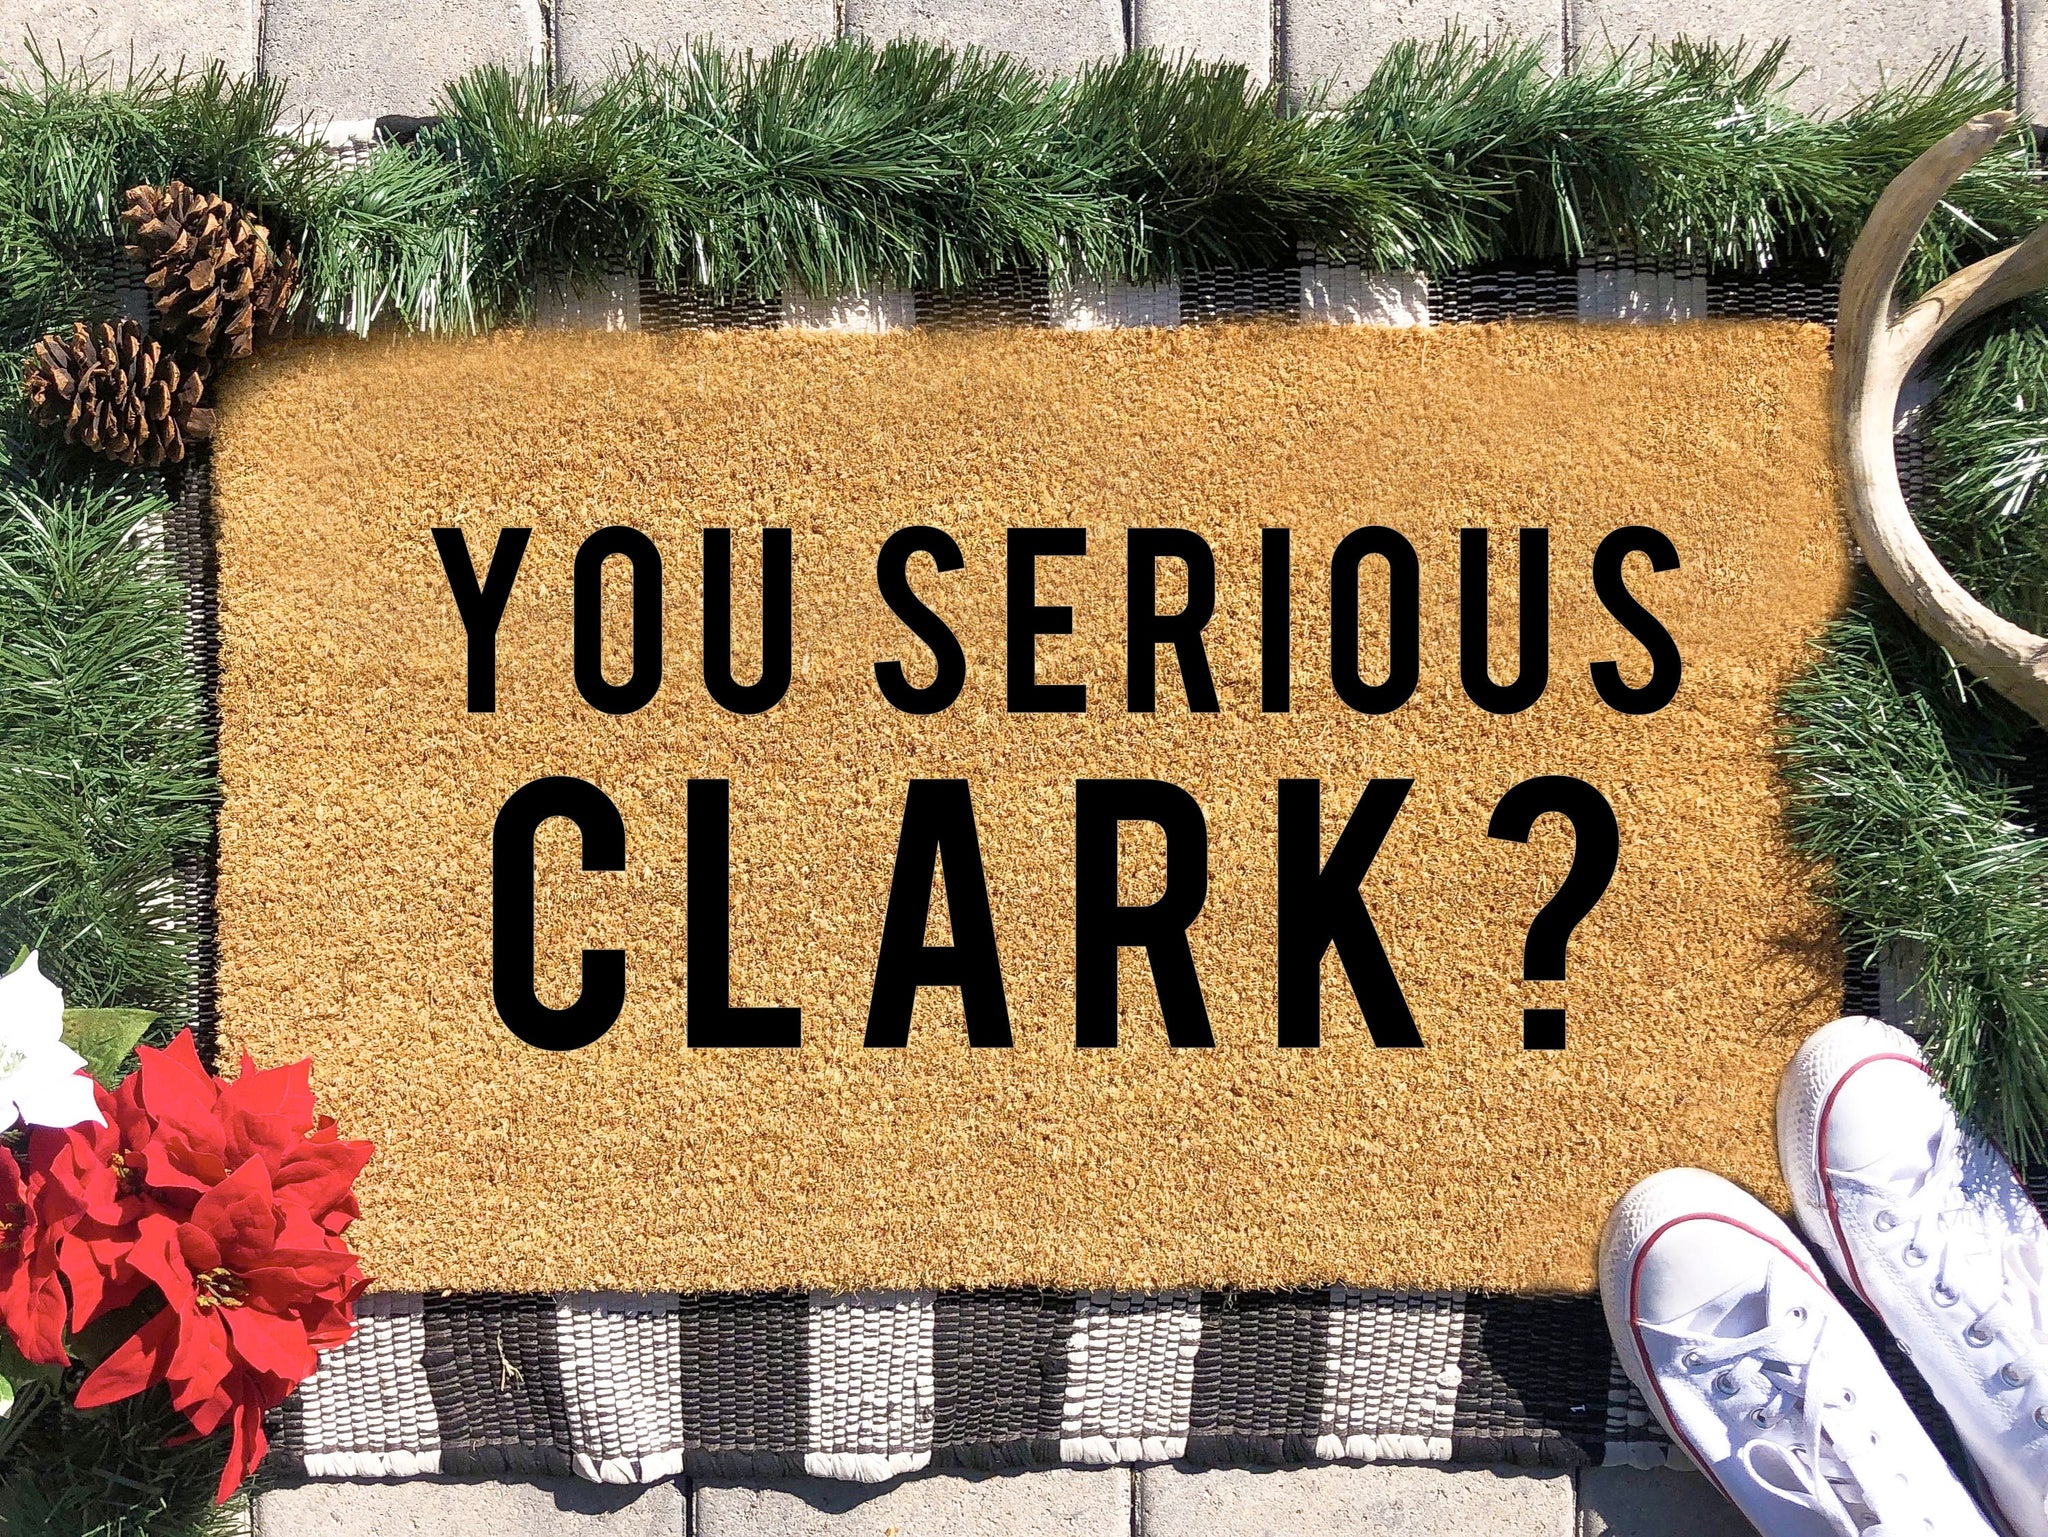 You Serious Clark Doormat